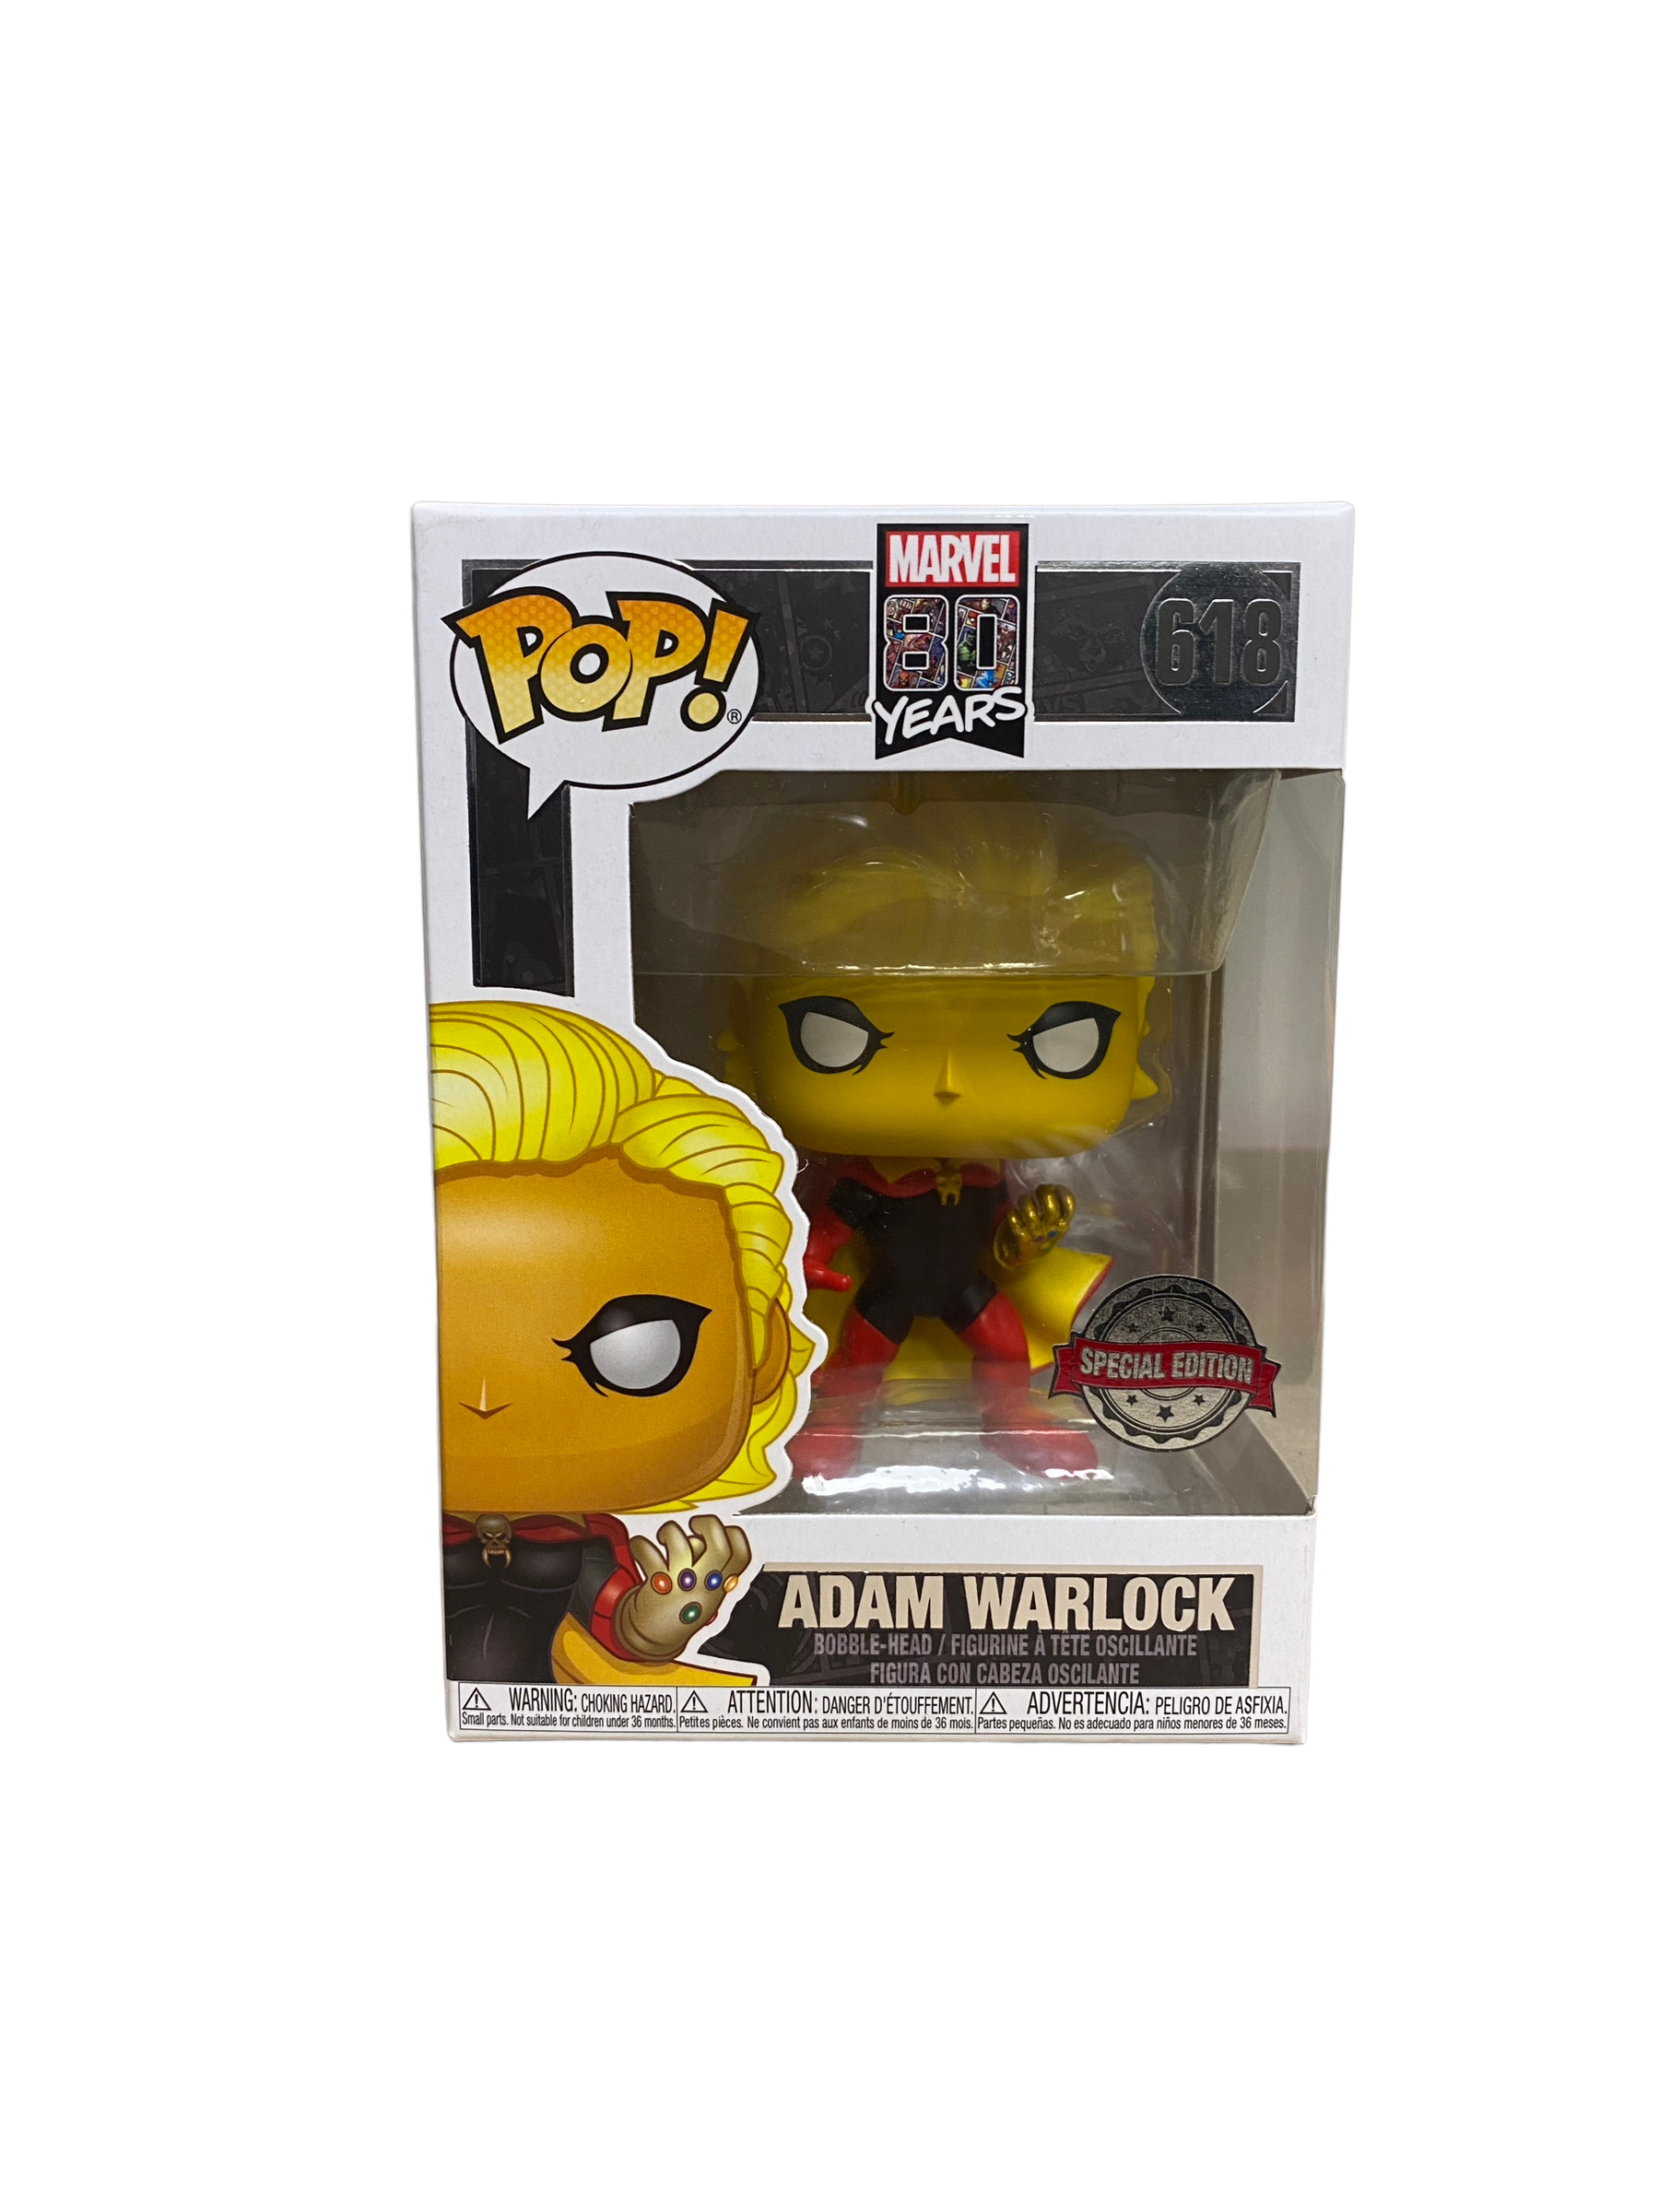 Adam Warlock #618 Funko Pop! - Marvel 80 Years - Special Edition - Condition 9/10